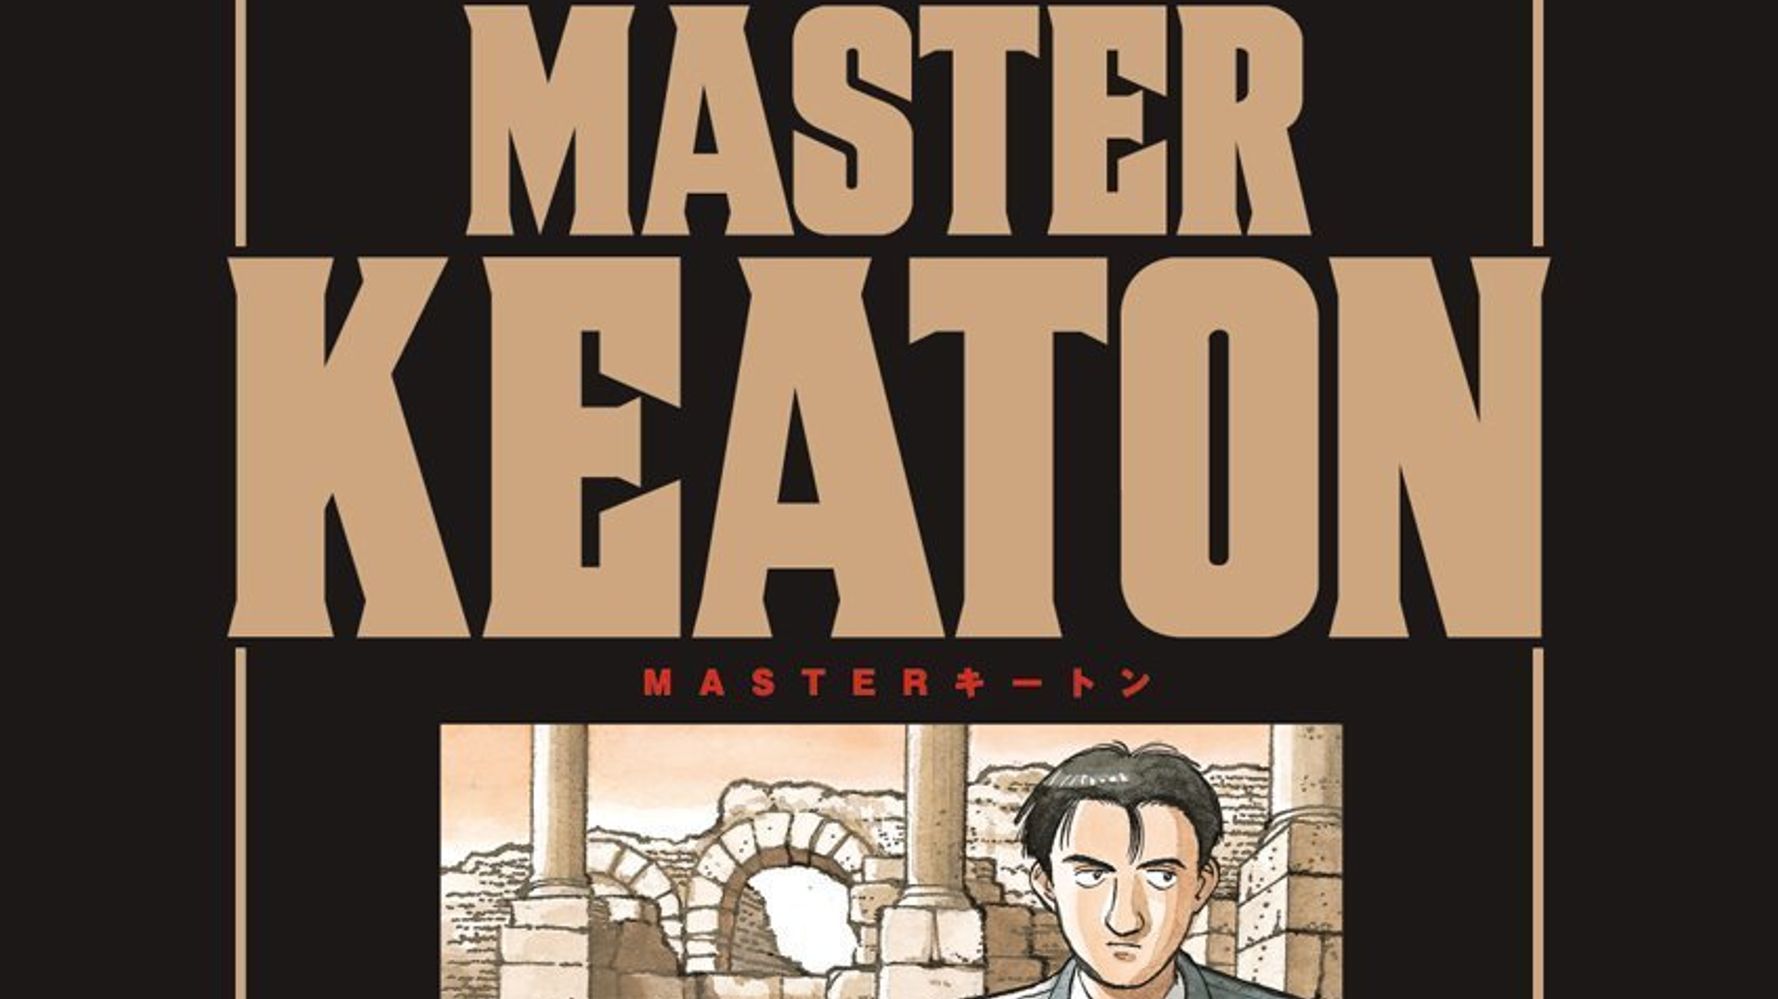 浦沢直樹 Masterキートン はブレグジット迷走の謎を知る最良の教材 ハフポスト